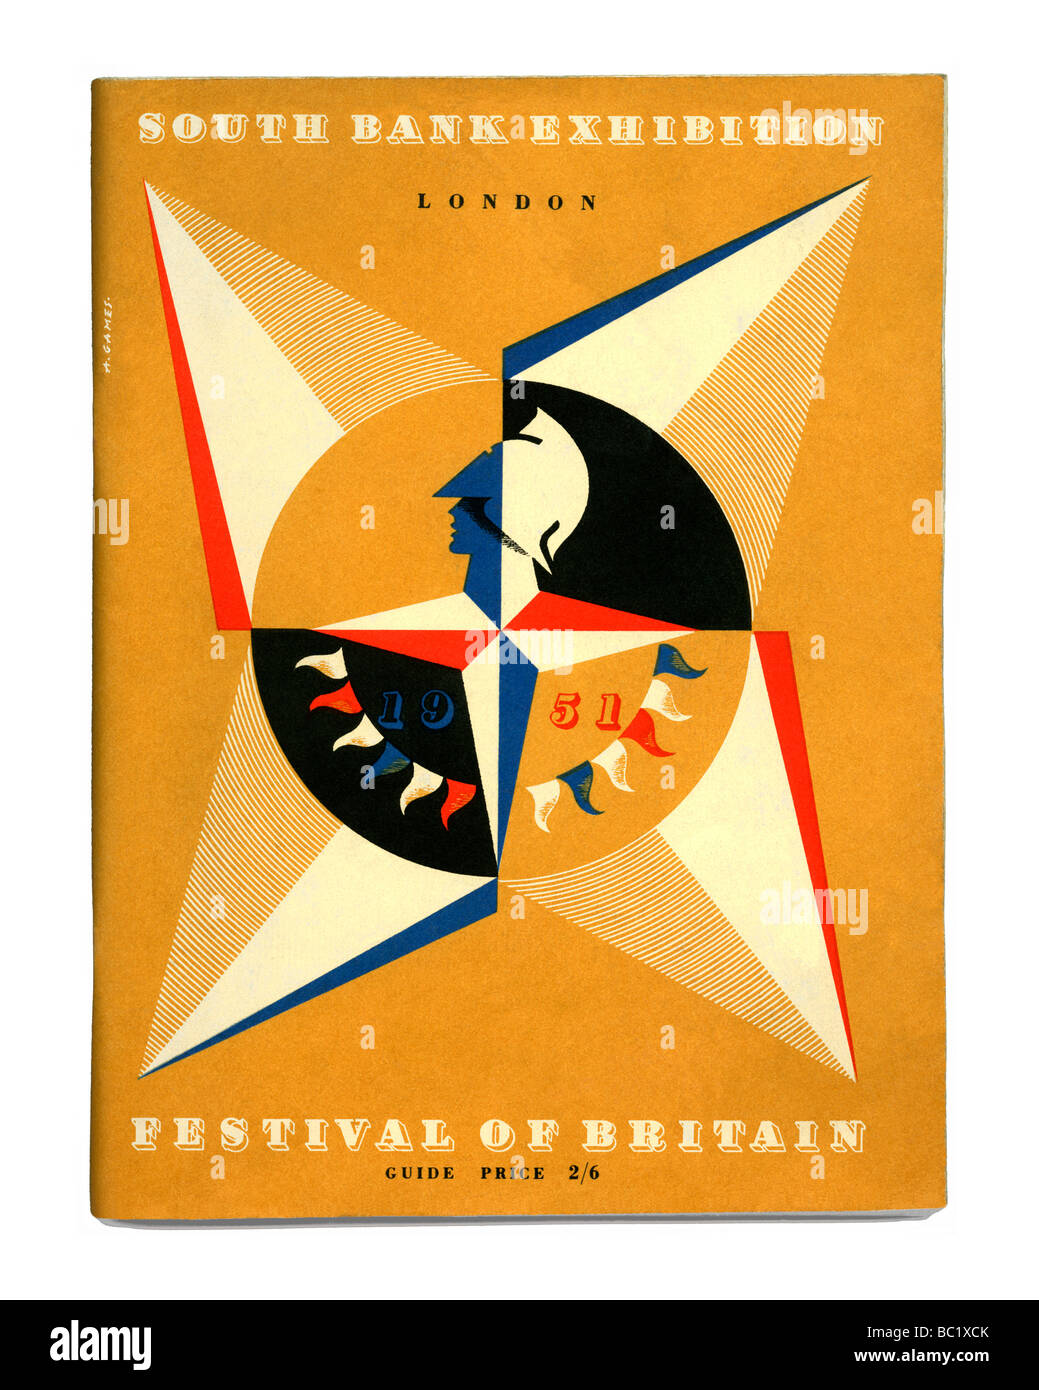 Page de couverture du guide pour le Festival de Grande-Bretagne 1951 Exposition de la Banque du Sud, Londres Banque D'Images